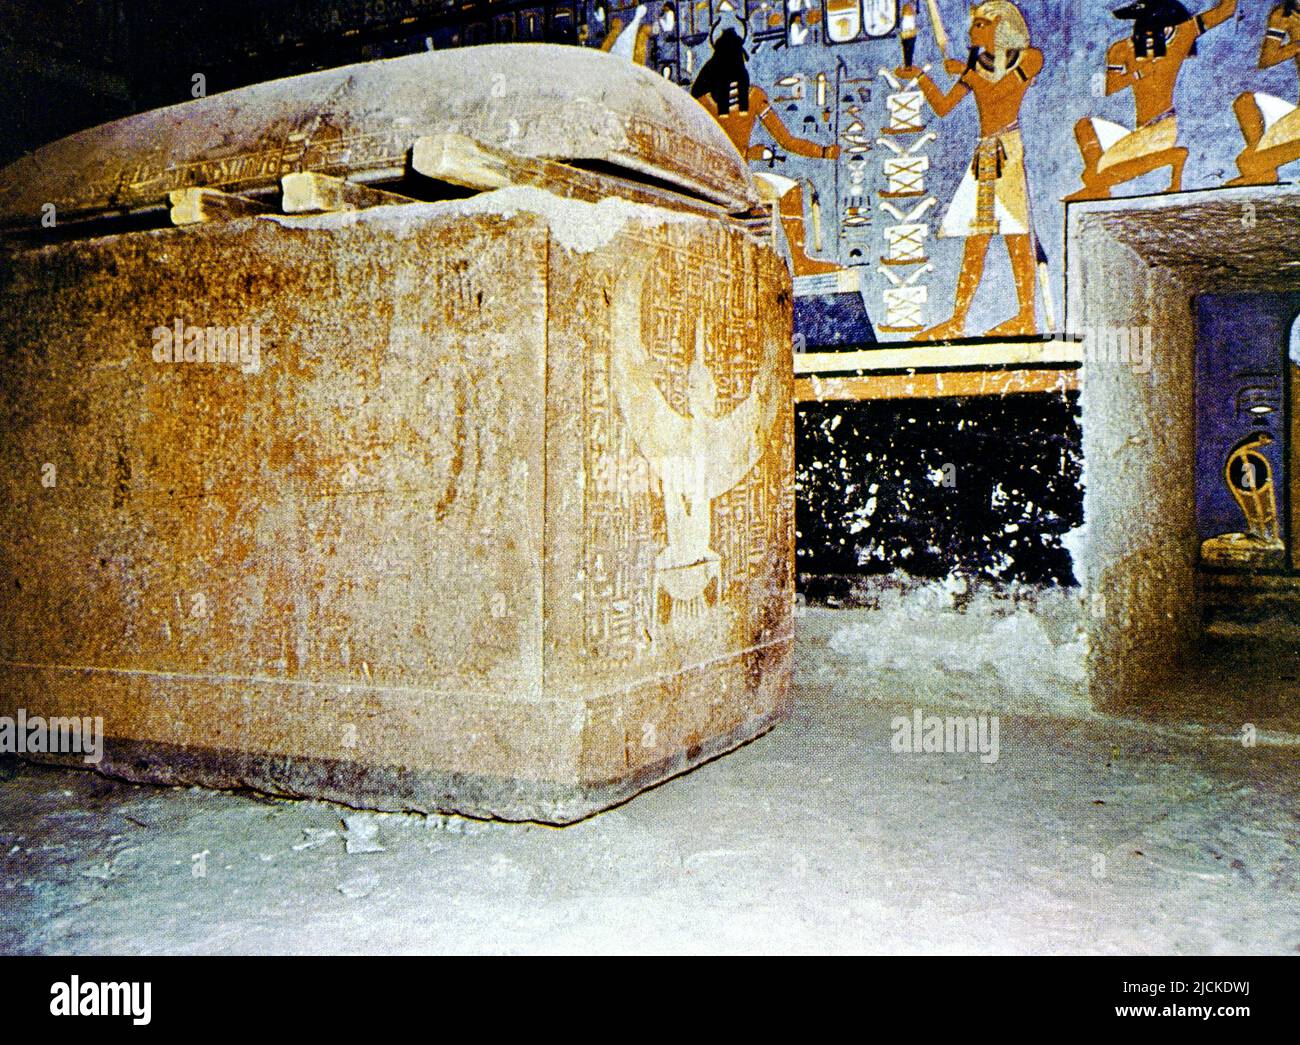 Luxor Egipto Valle de los Reyes Rameses I Sarcófago Hecho de Quartzita Roja en Tumba decorada con Escenas del Libro de los Muertos Foto de stock